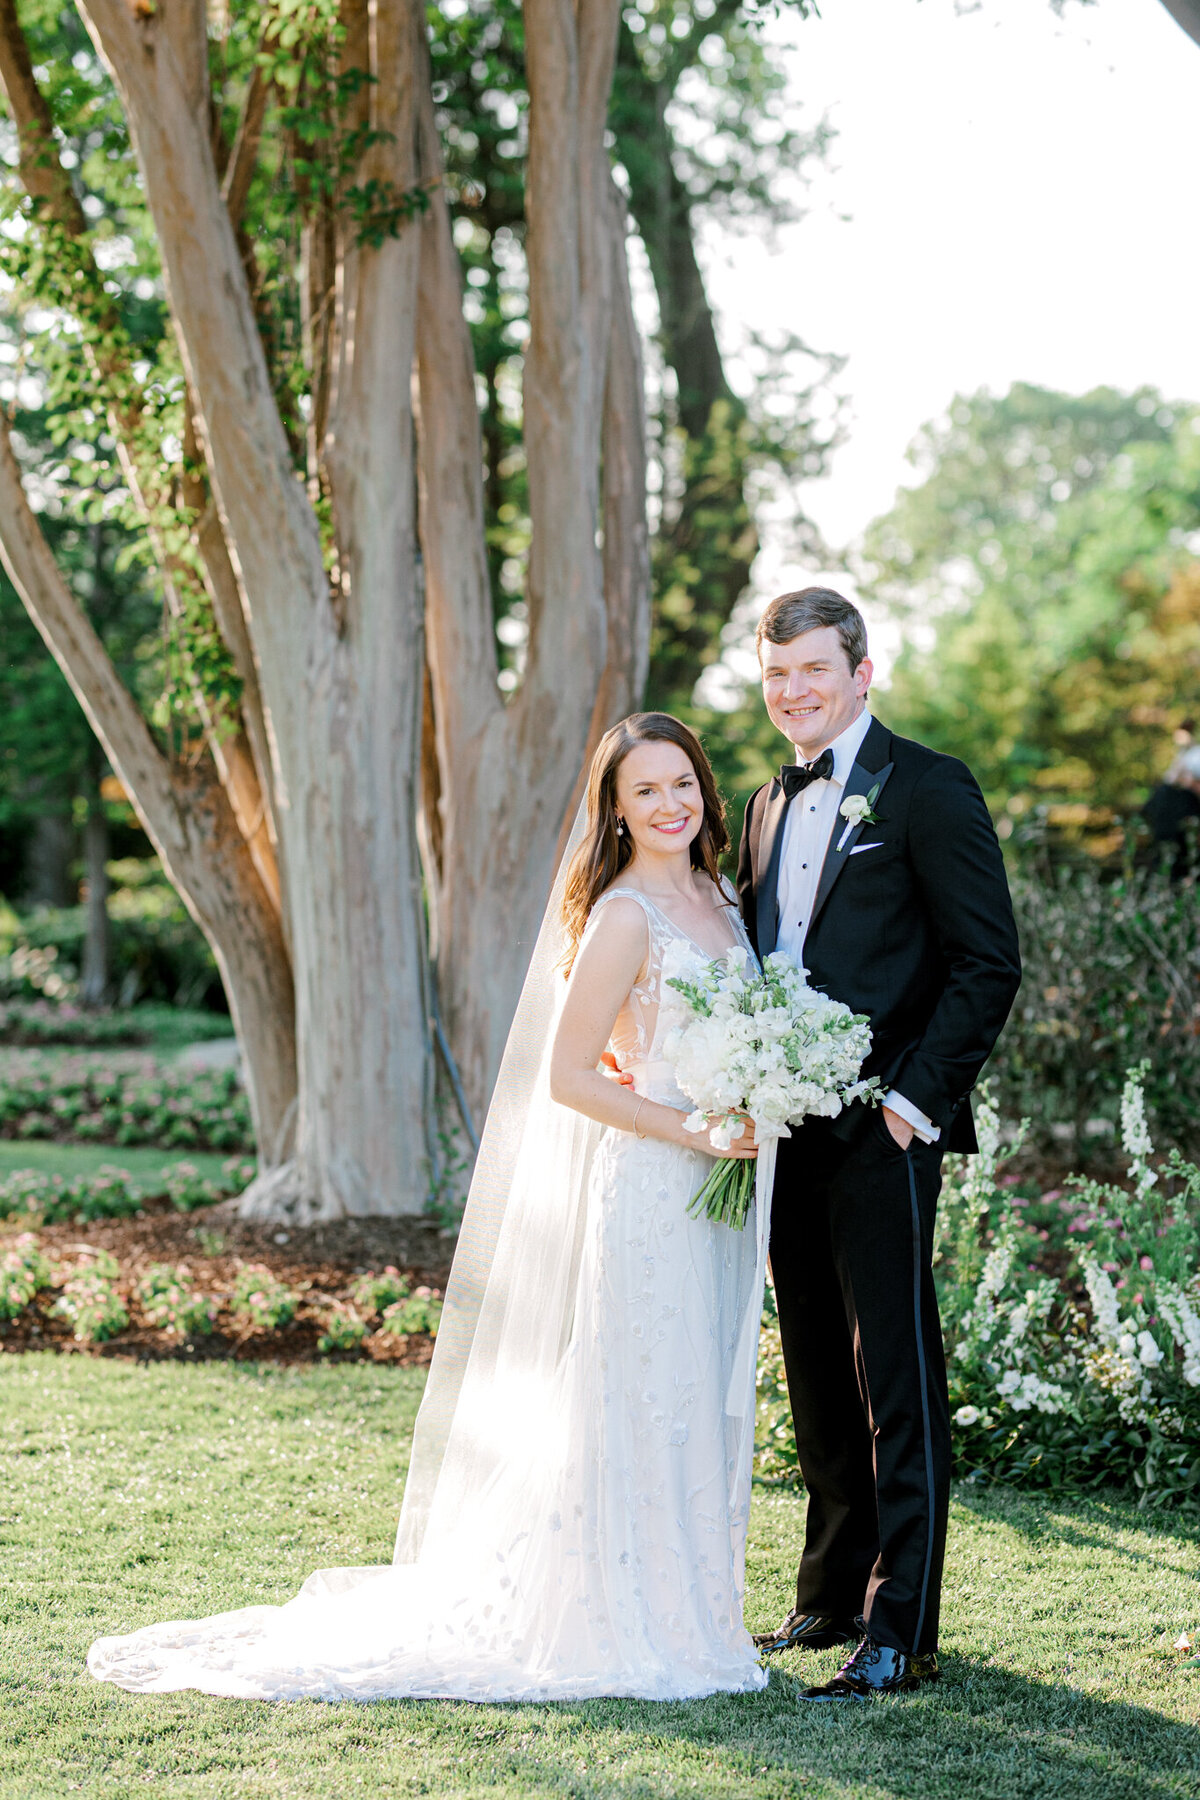 Gena & Matt's Wedding at the Dallas Arboretum | Dallas Wedding Photographer | Sami Kathryn Photography-164